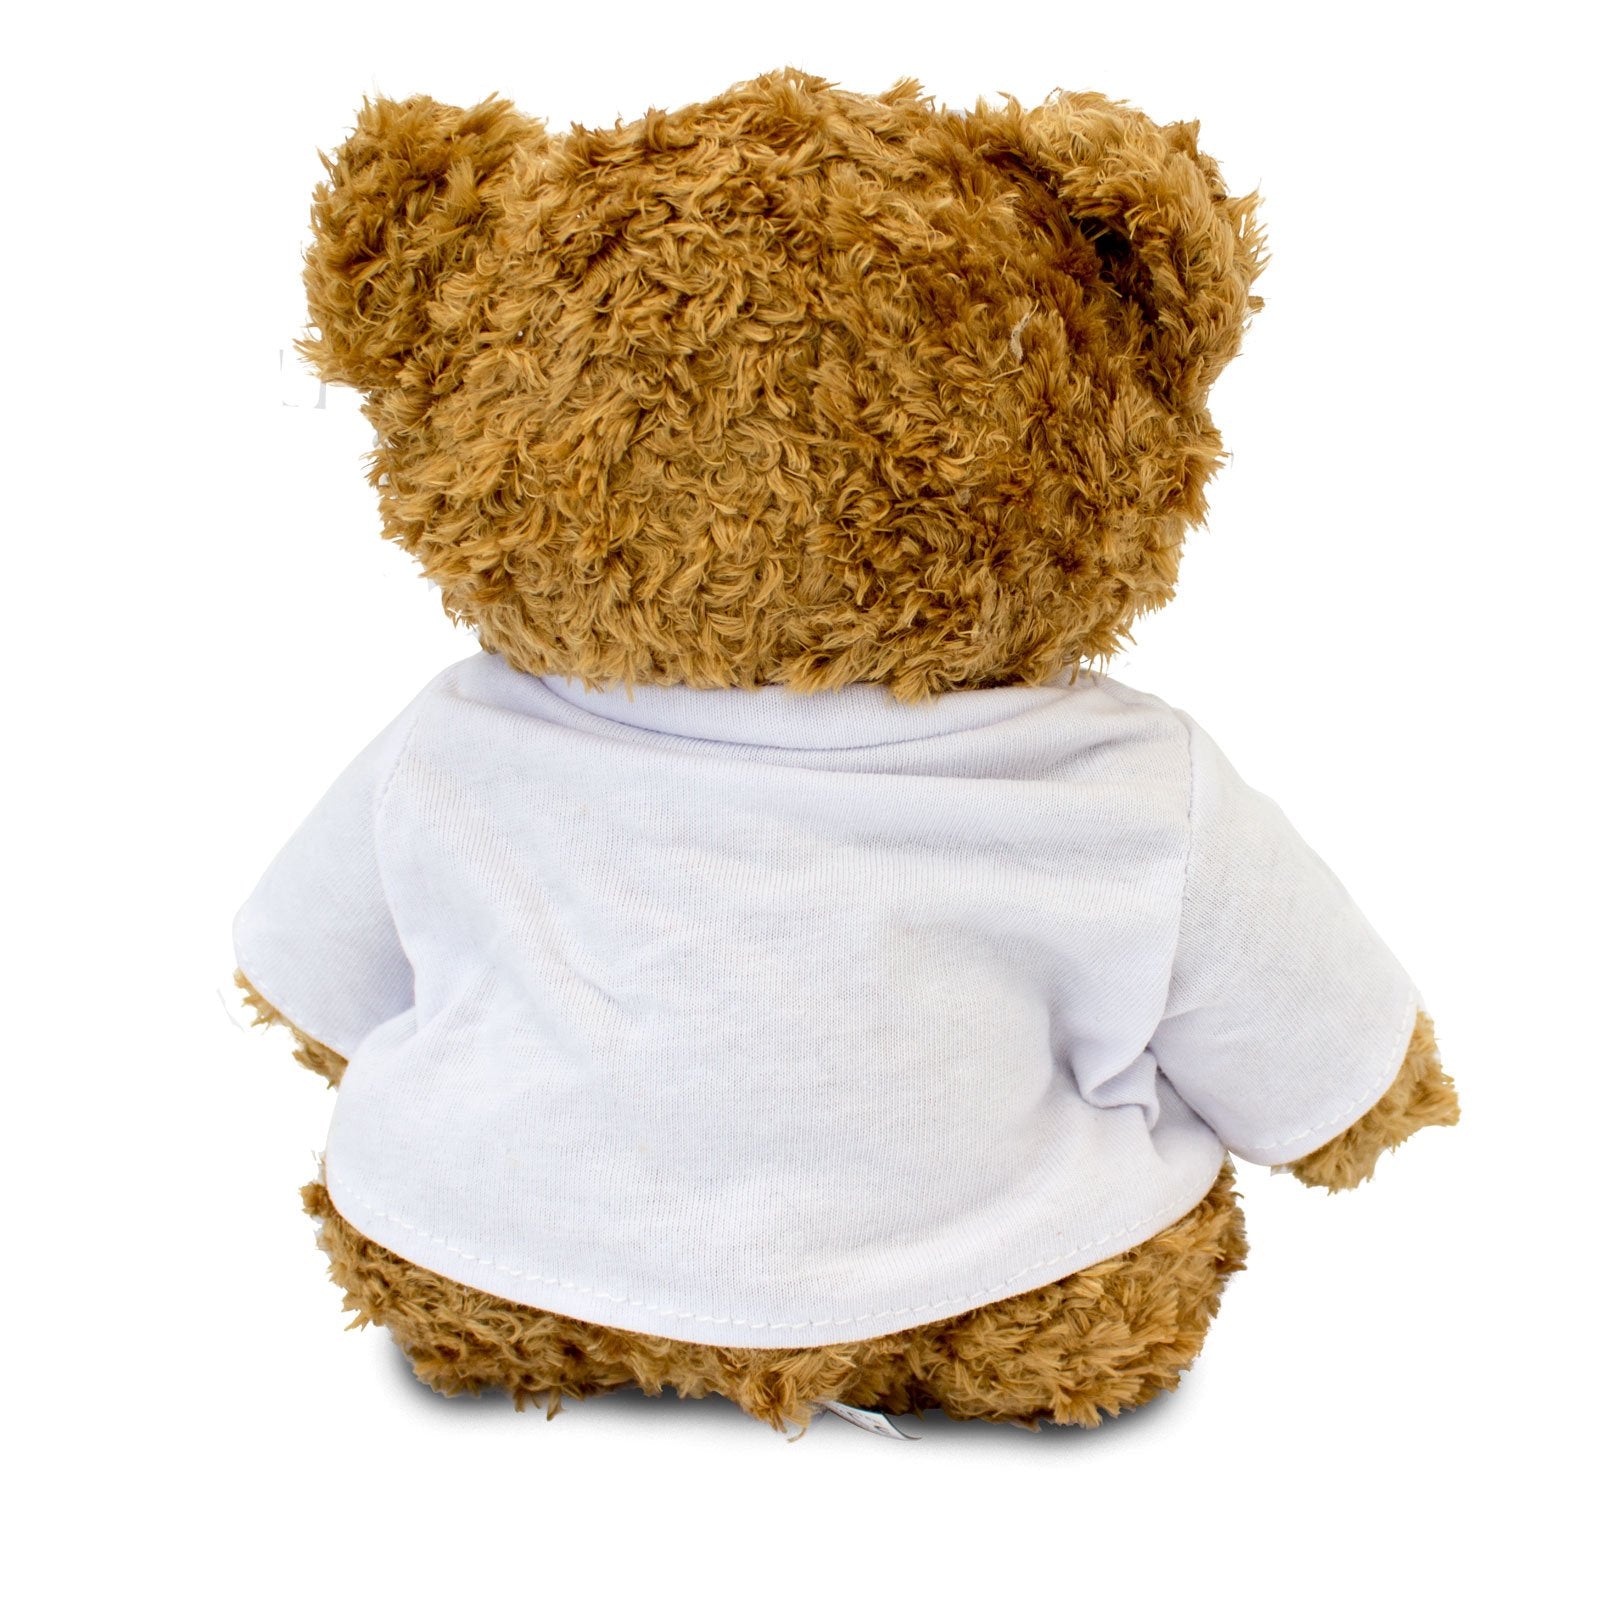 Get Well Soon Brother - Teddy Bear